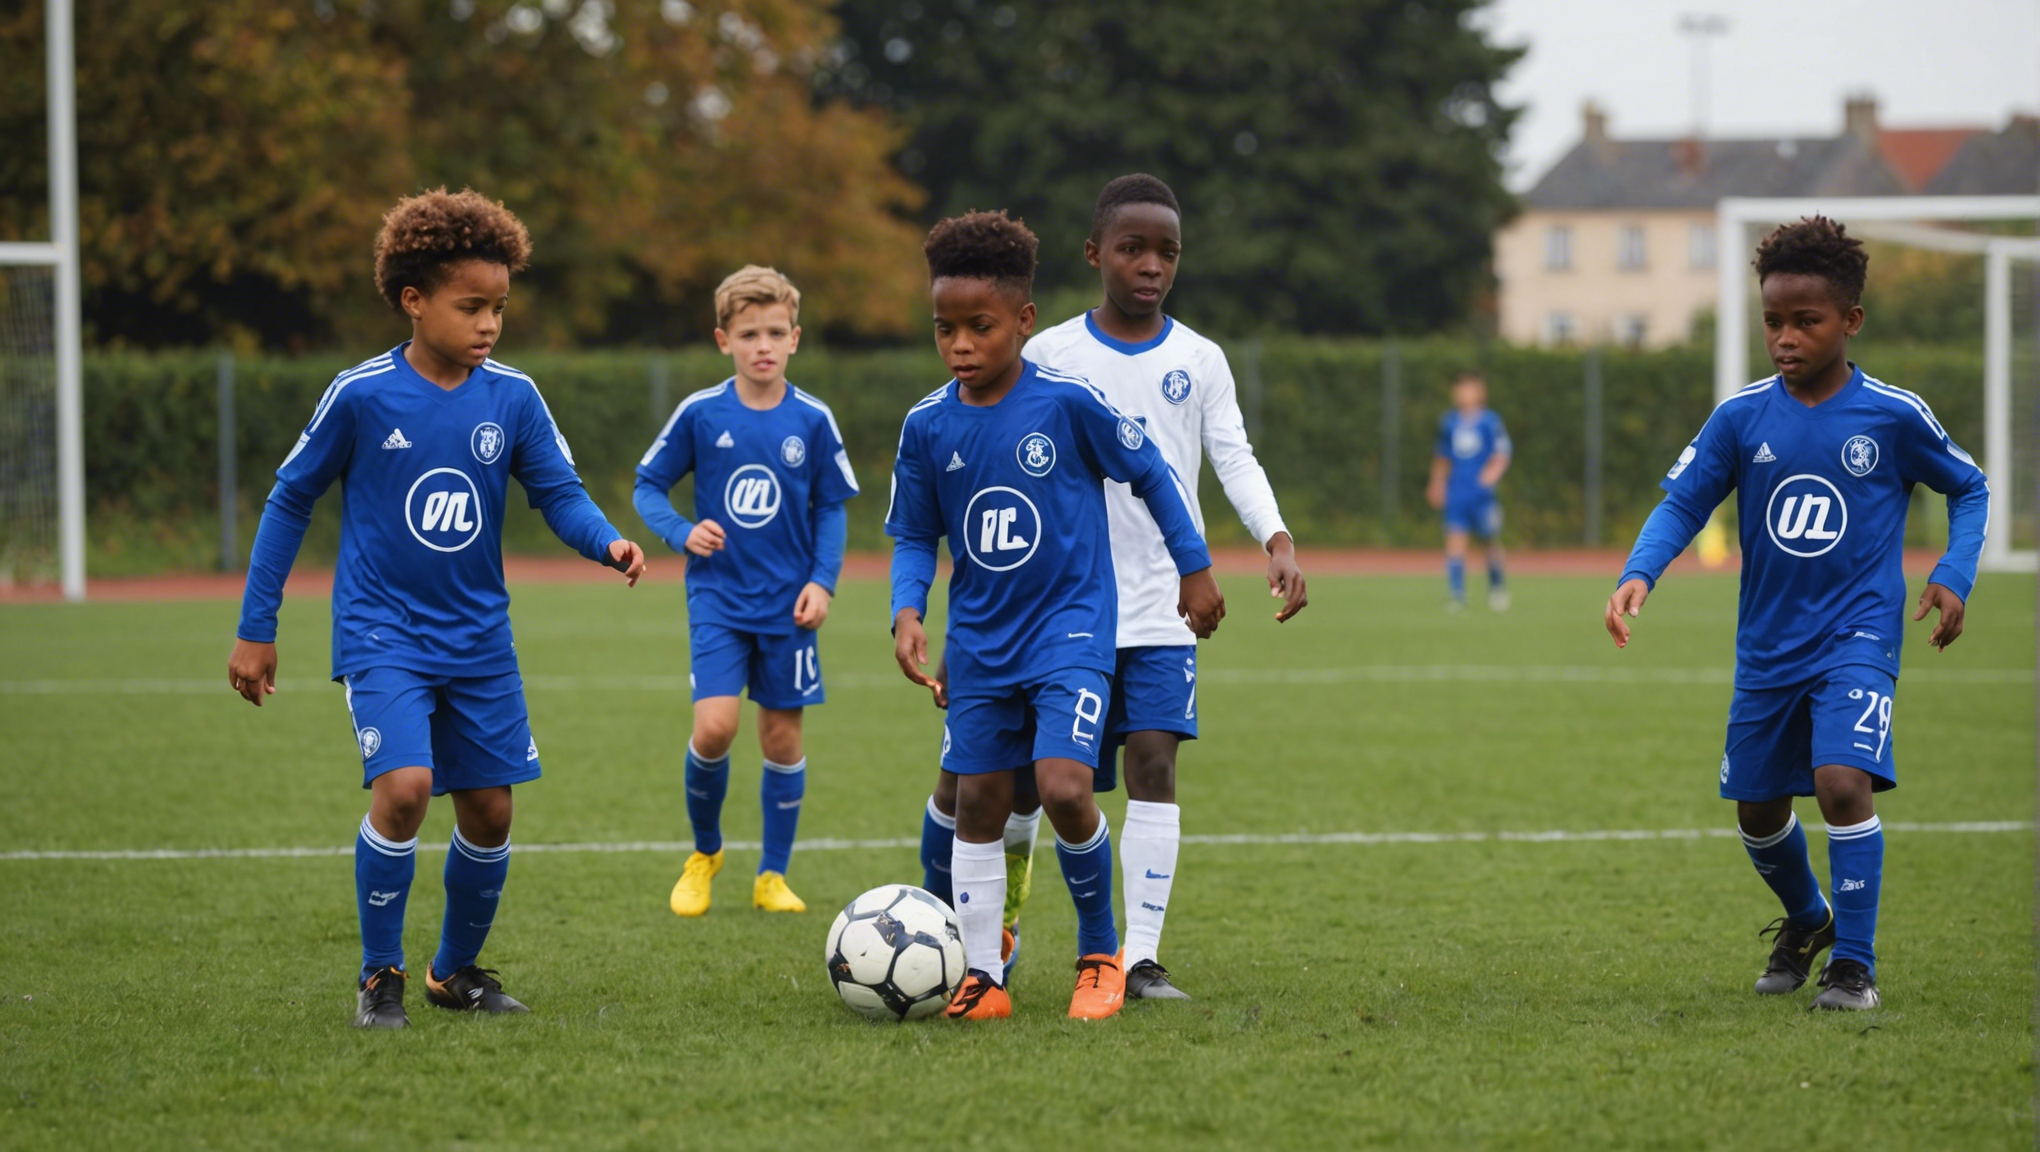 découvrez où se situe le meilleur repérage de jeunes talents dans le domaine du football en île-de-france.